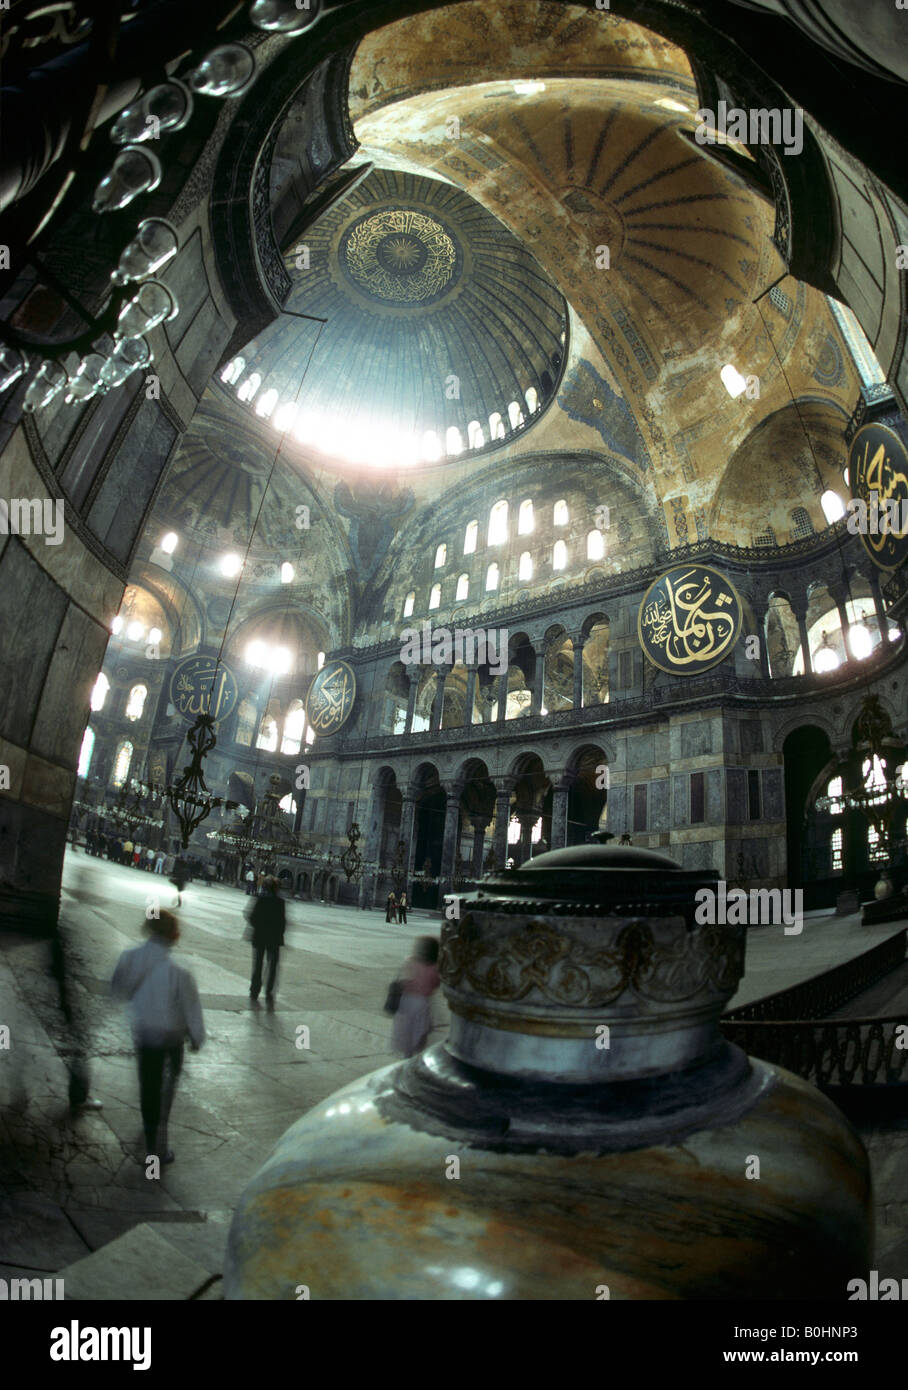 L'intérieur de l'Hagia Sophia Museum, autrefois une église chrétienne Byzantine et d'une mosquée musulmane, Istanbul, Turquie. Banque D'Images